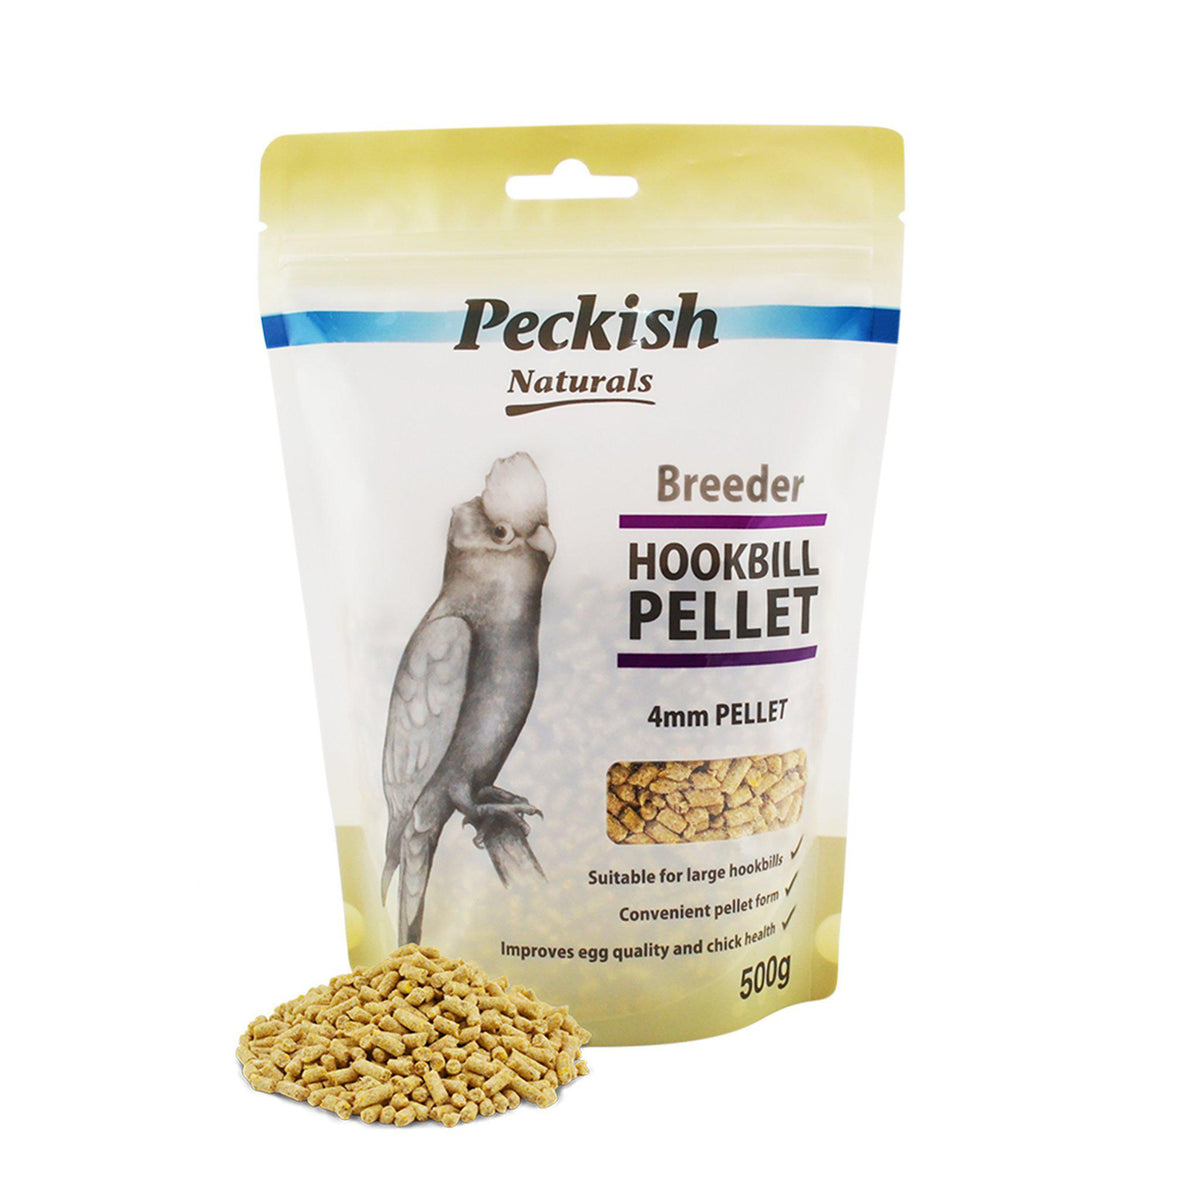 Peckish Naturals Breeder Hookbill 4mm Pellet - Large - ComfyPet Products